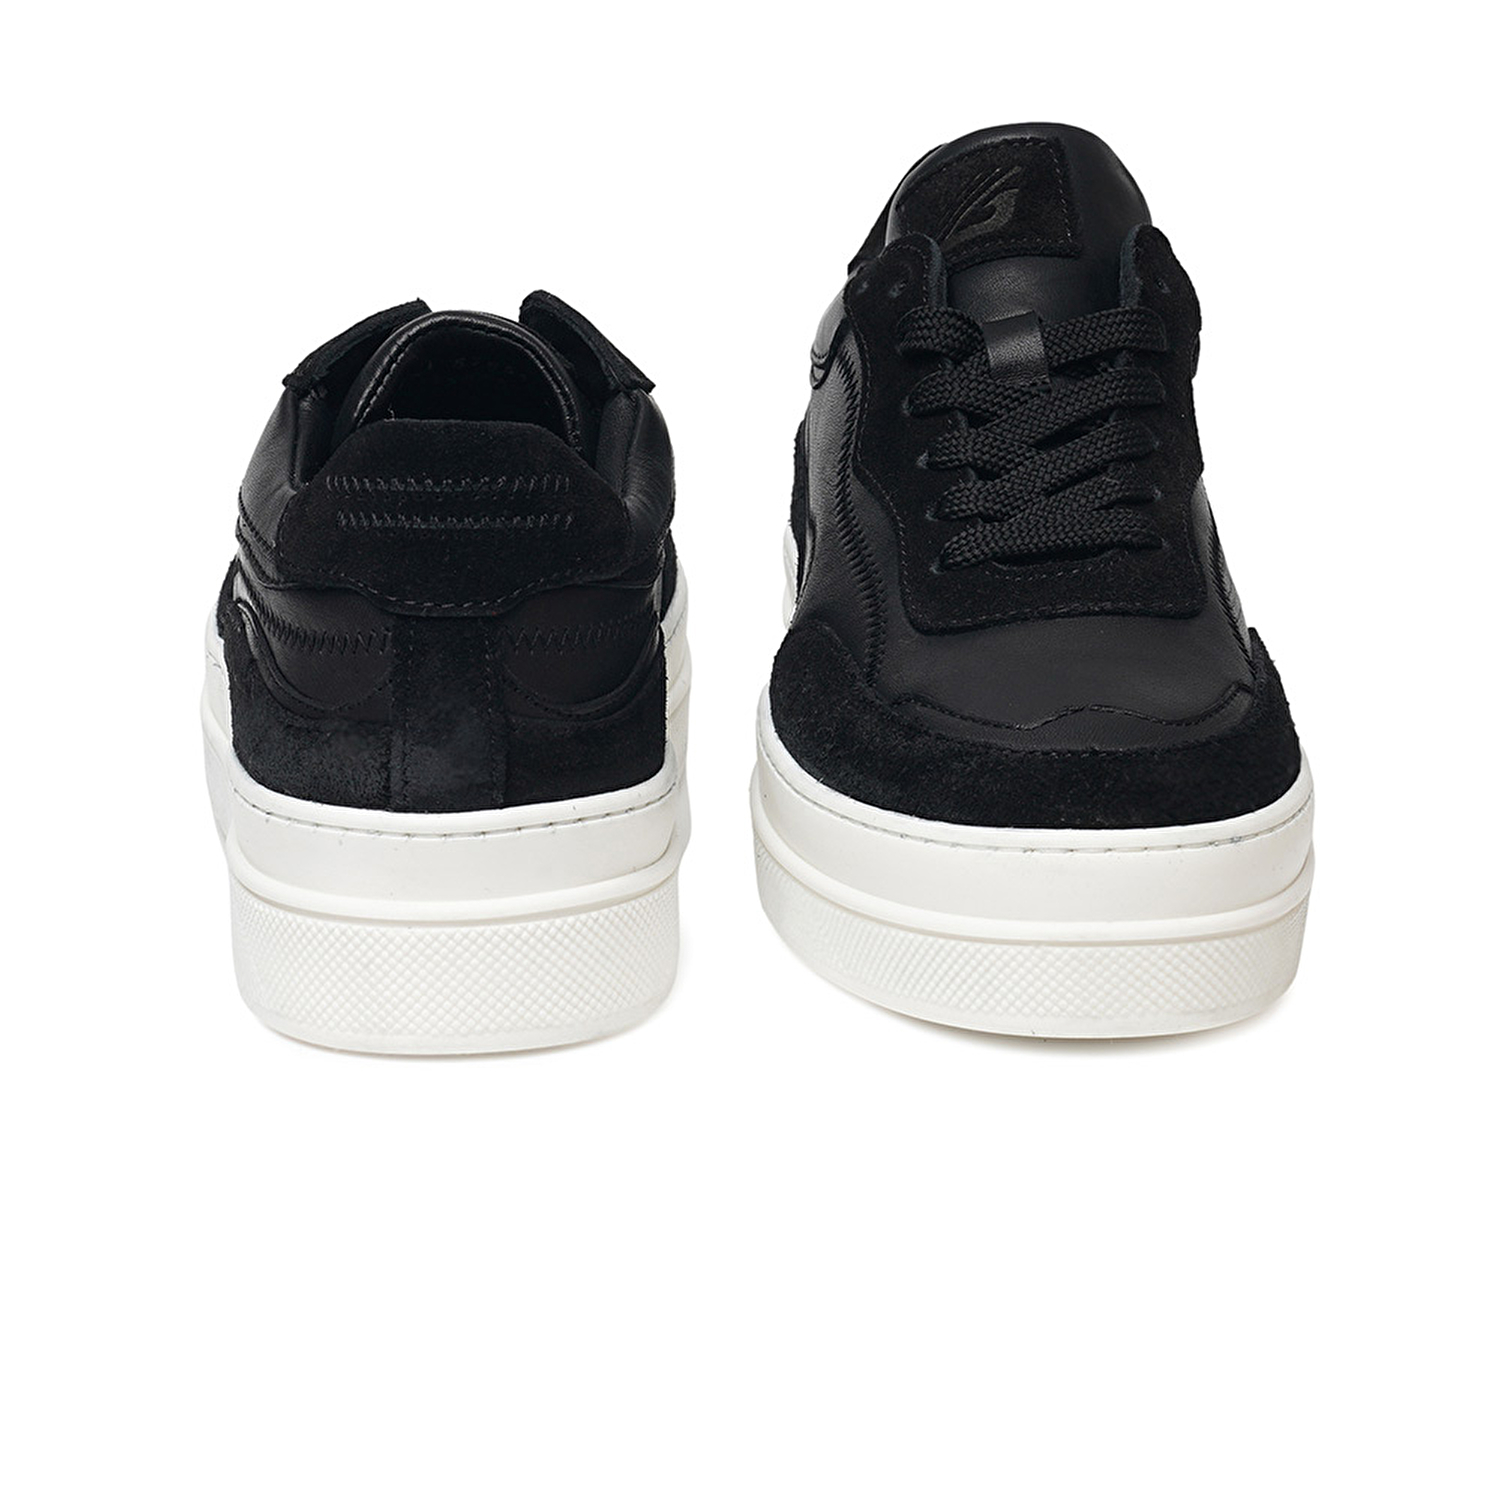 Kadın Siyah Hakiki Deri Sneaker Ayakkabı 3K2SA33071-6